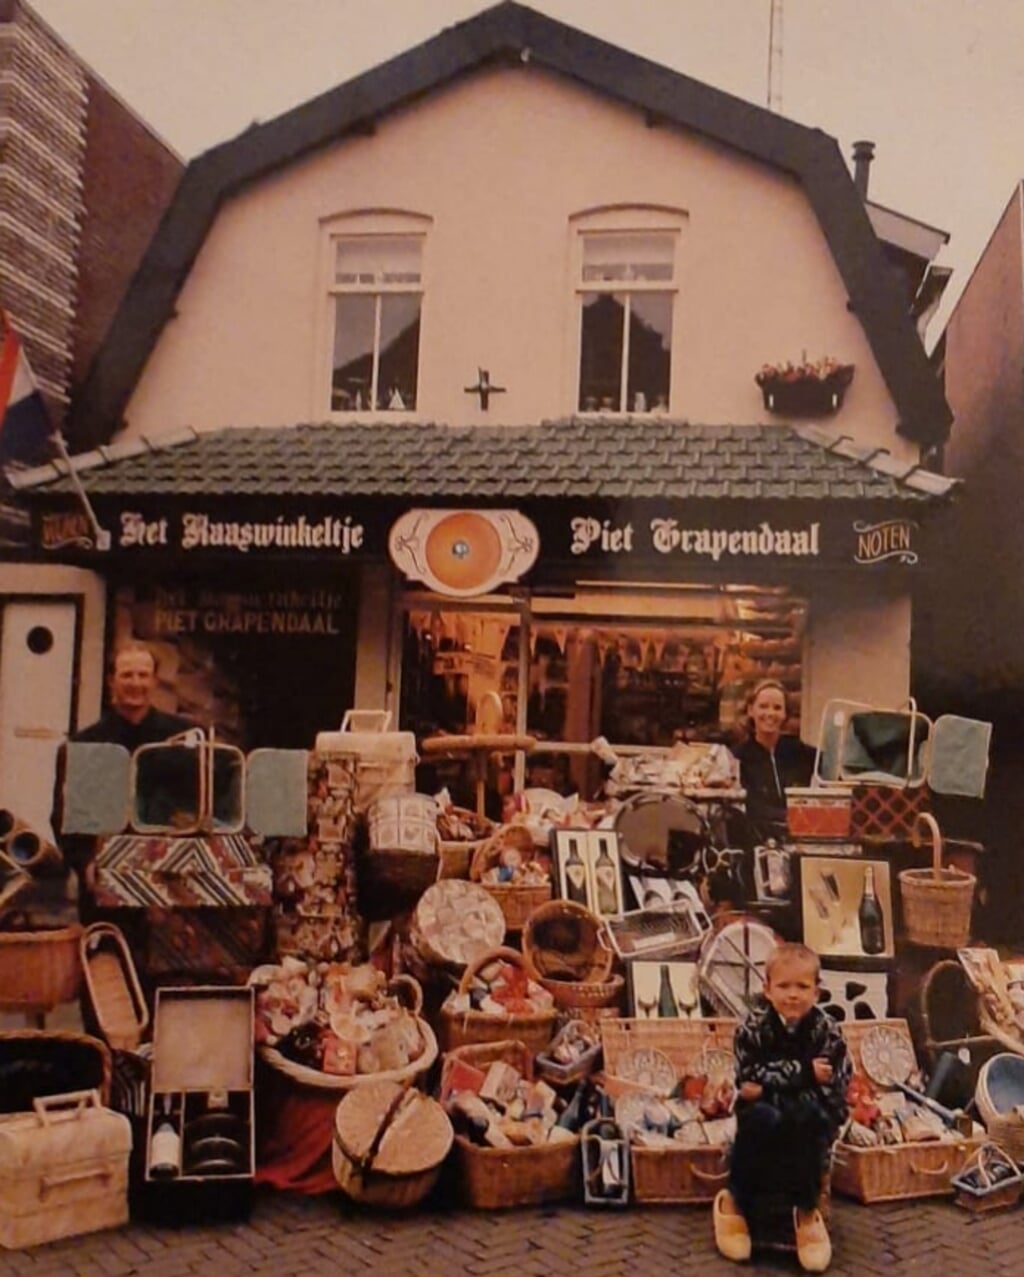 Het Kaaswinkeltje Piet grapendaal 1998.